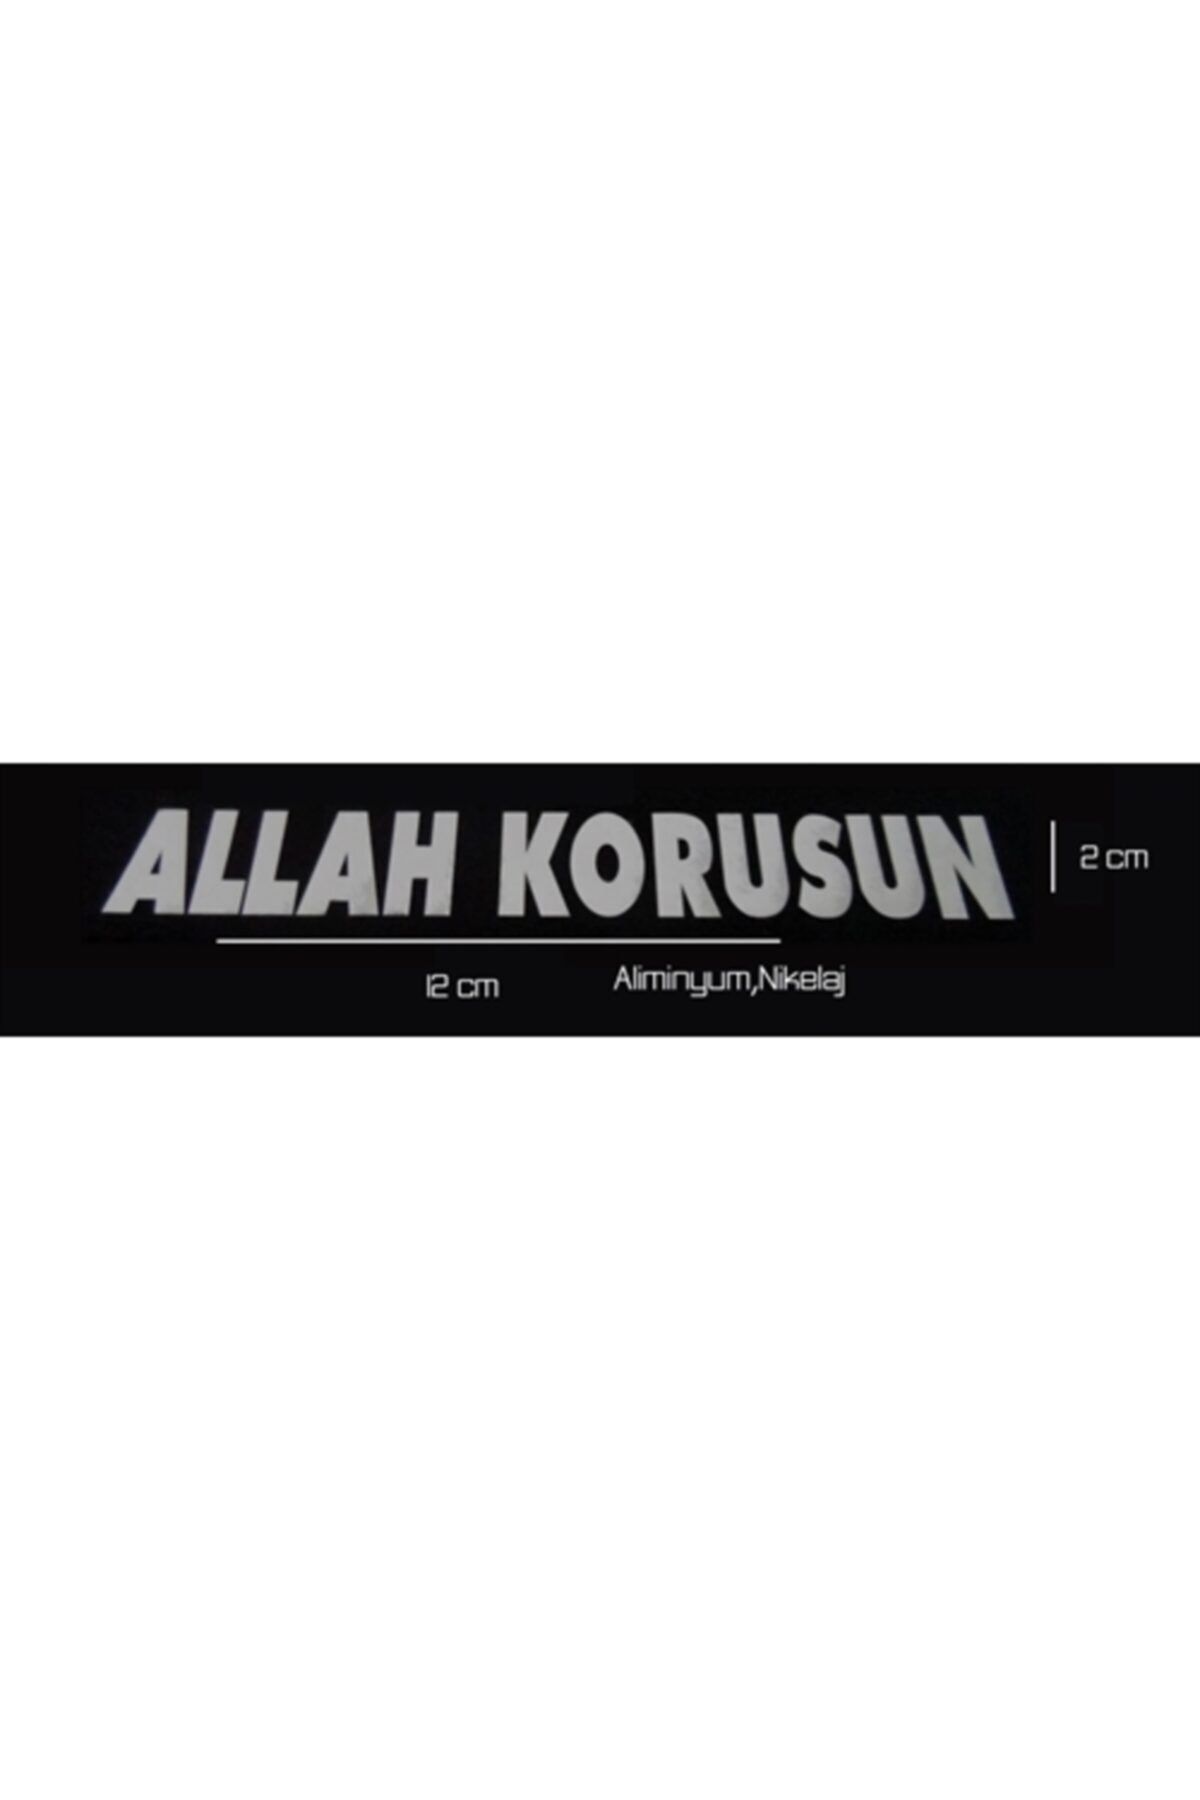 ModaCar Allah Korusun Aliminyum Sticker 428537